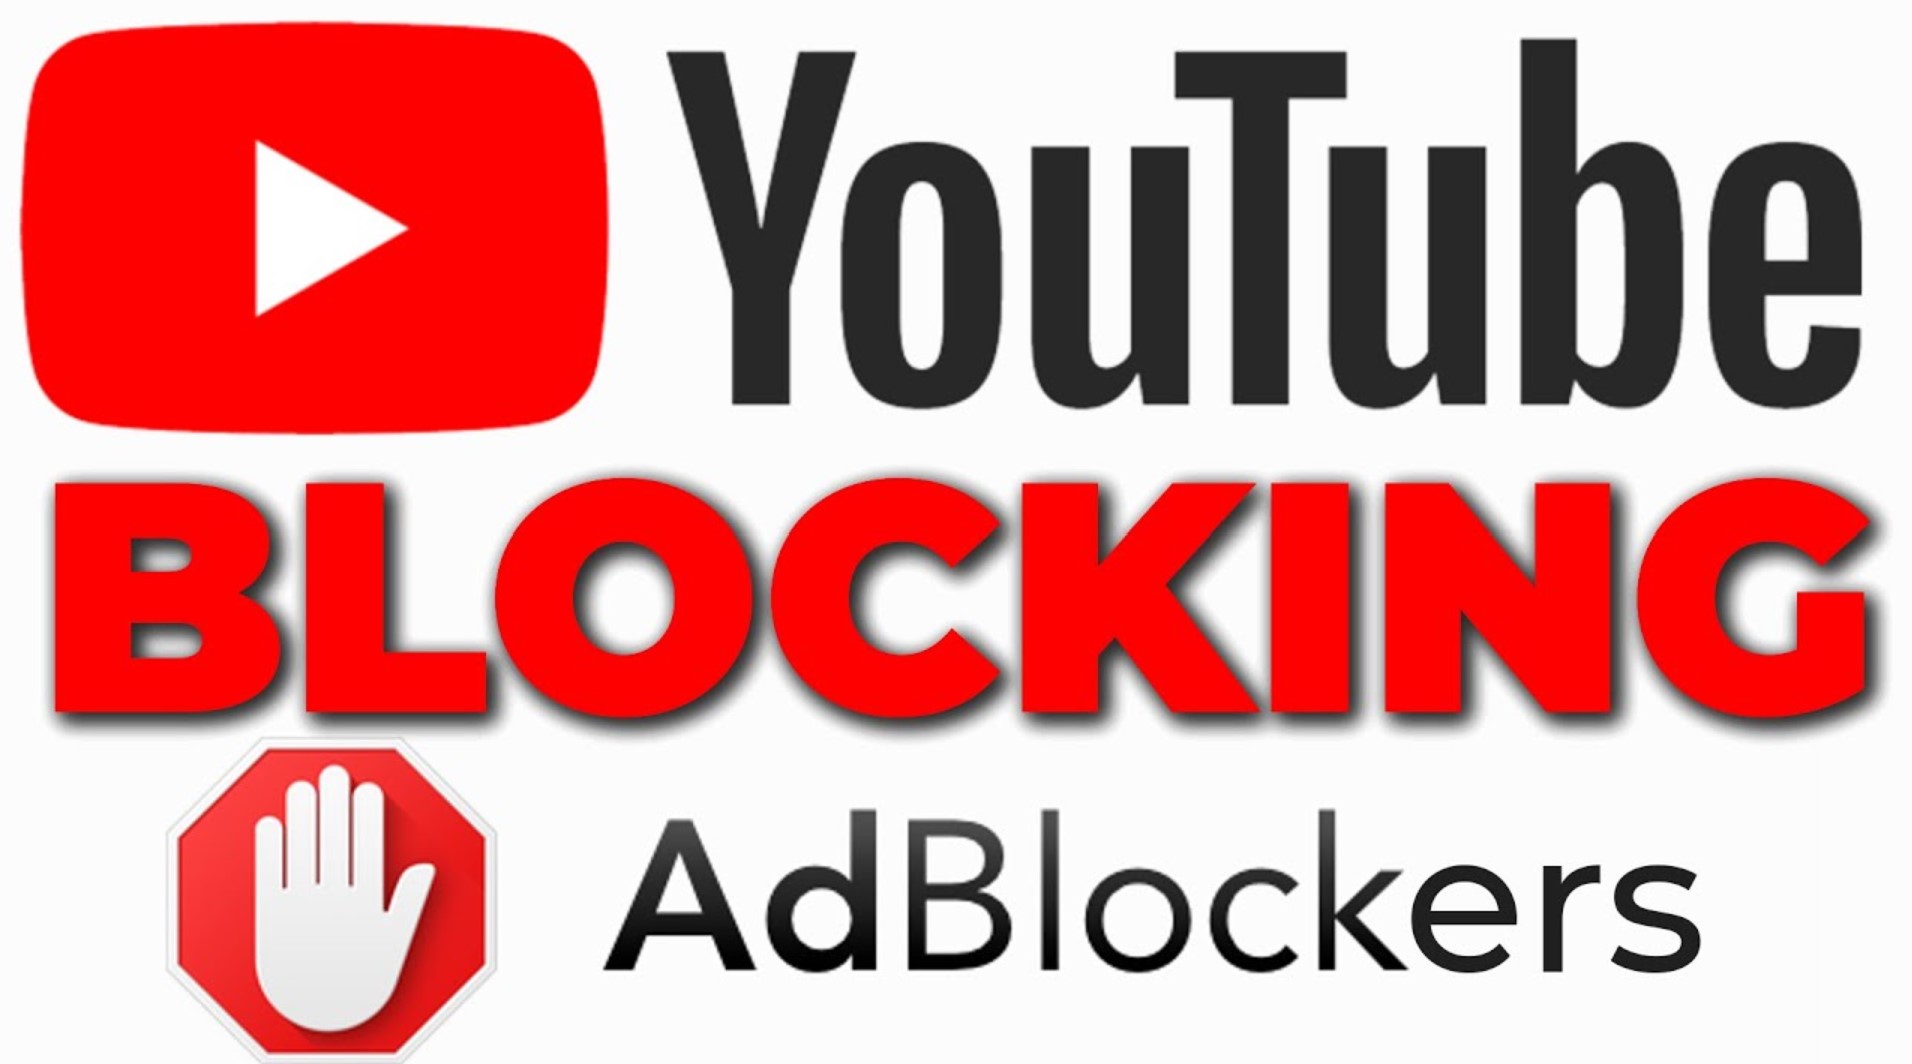 YouTube blocks ad blocker scams – Go Premium instead